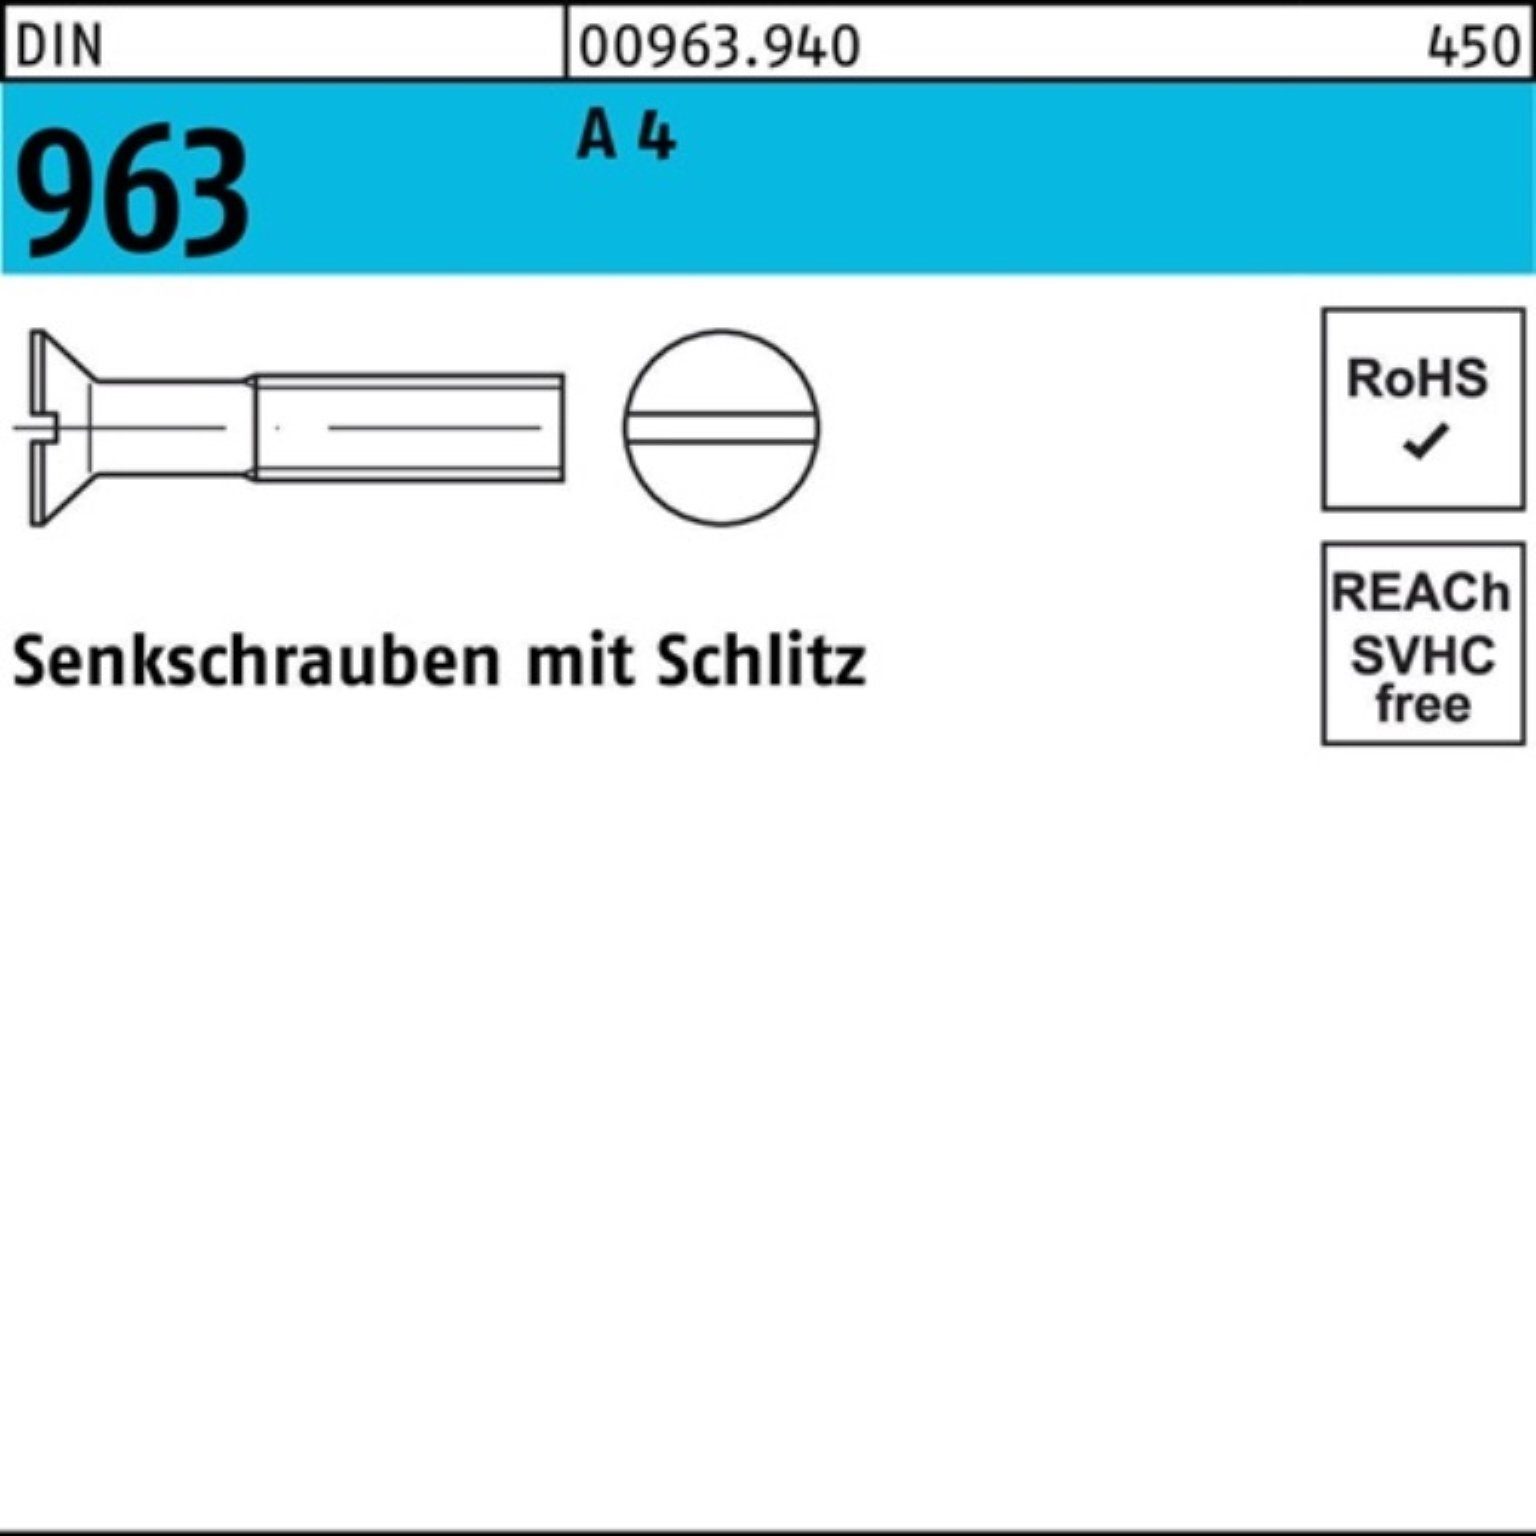 Reyher Senkschraube 200er 16 DIN Senkschraube M5x Stück Schlitz 963 963 4 DIN Pack 200 A